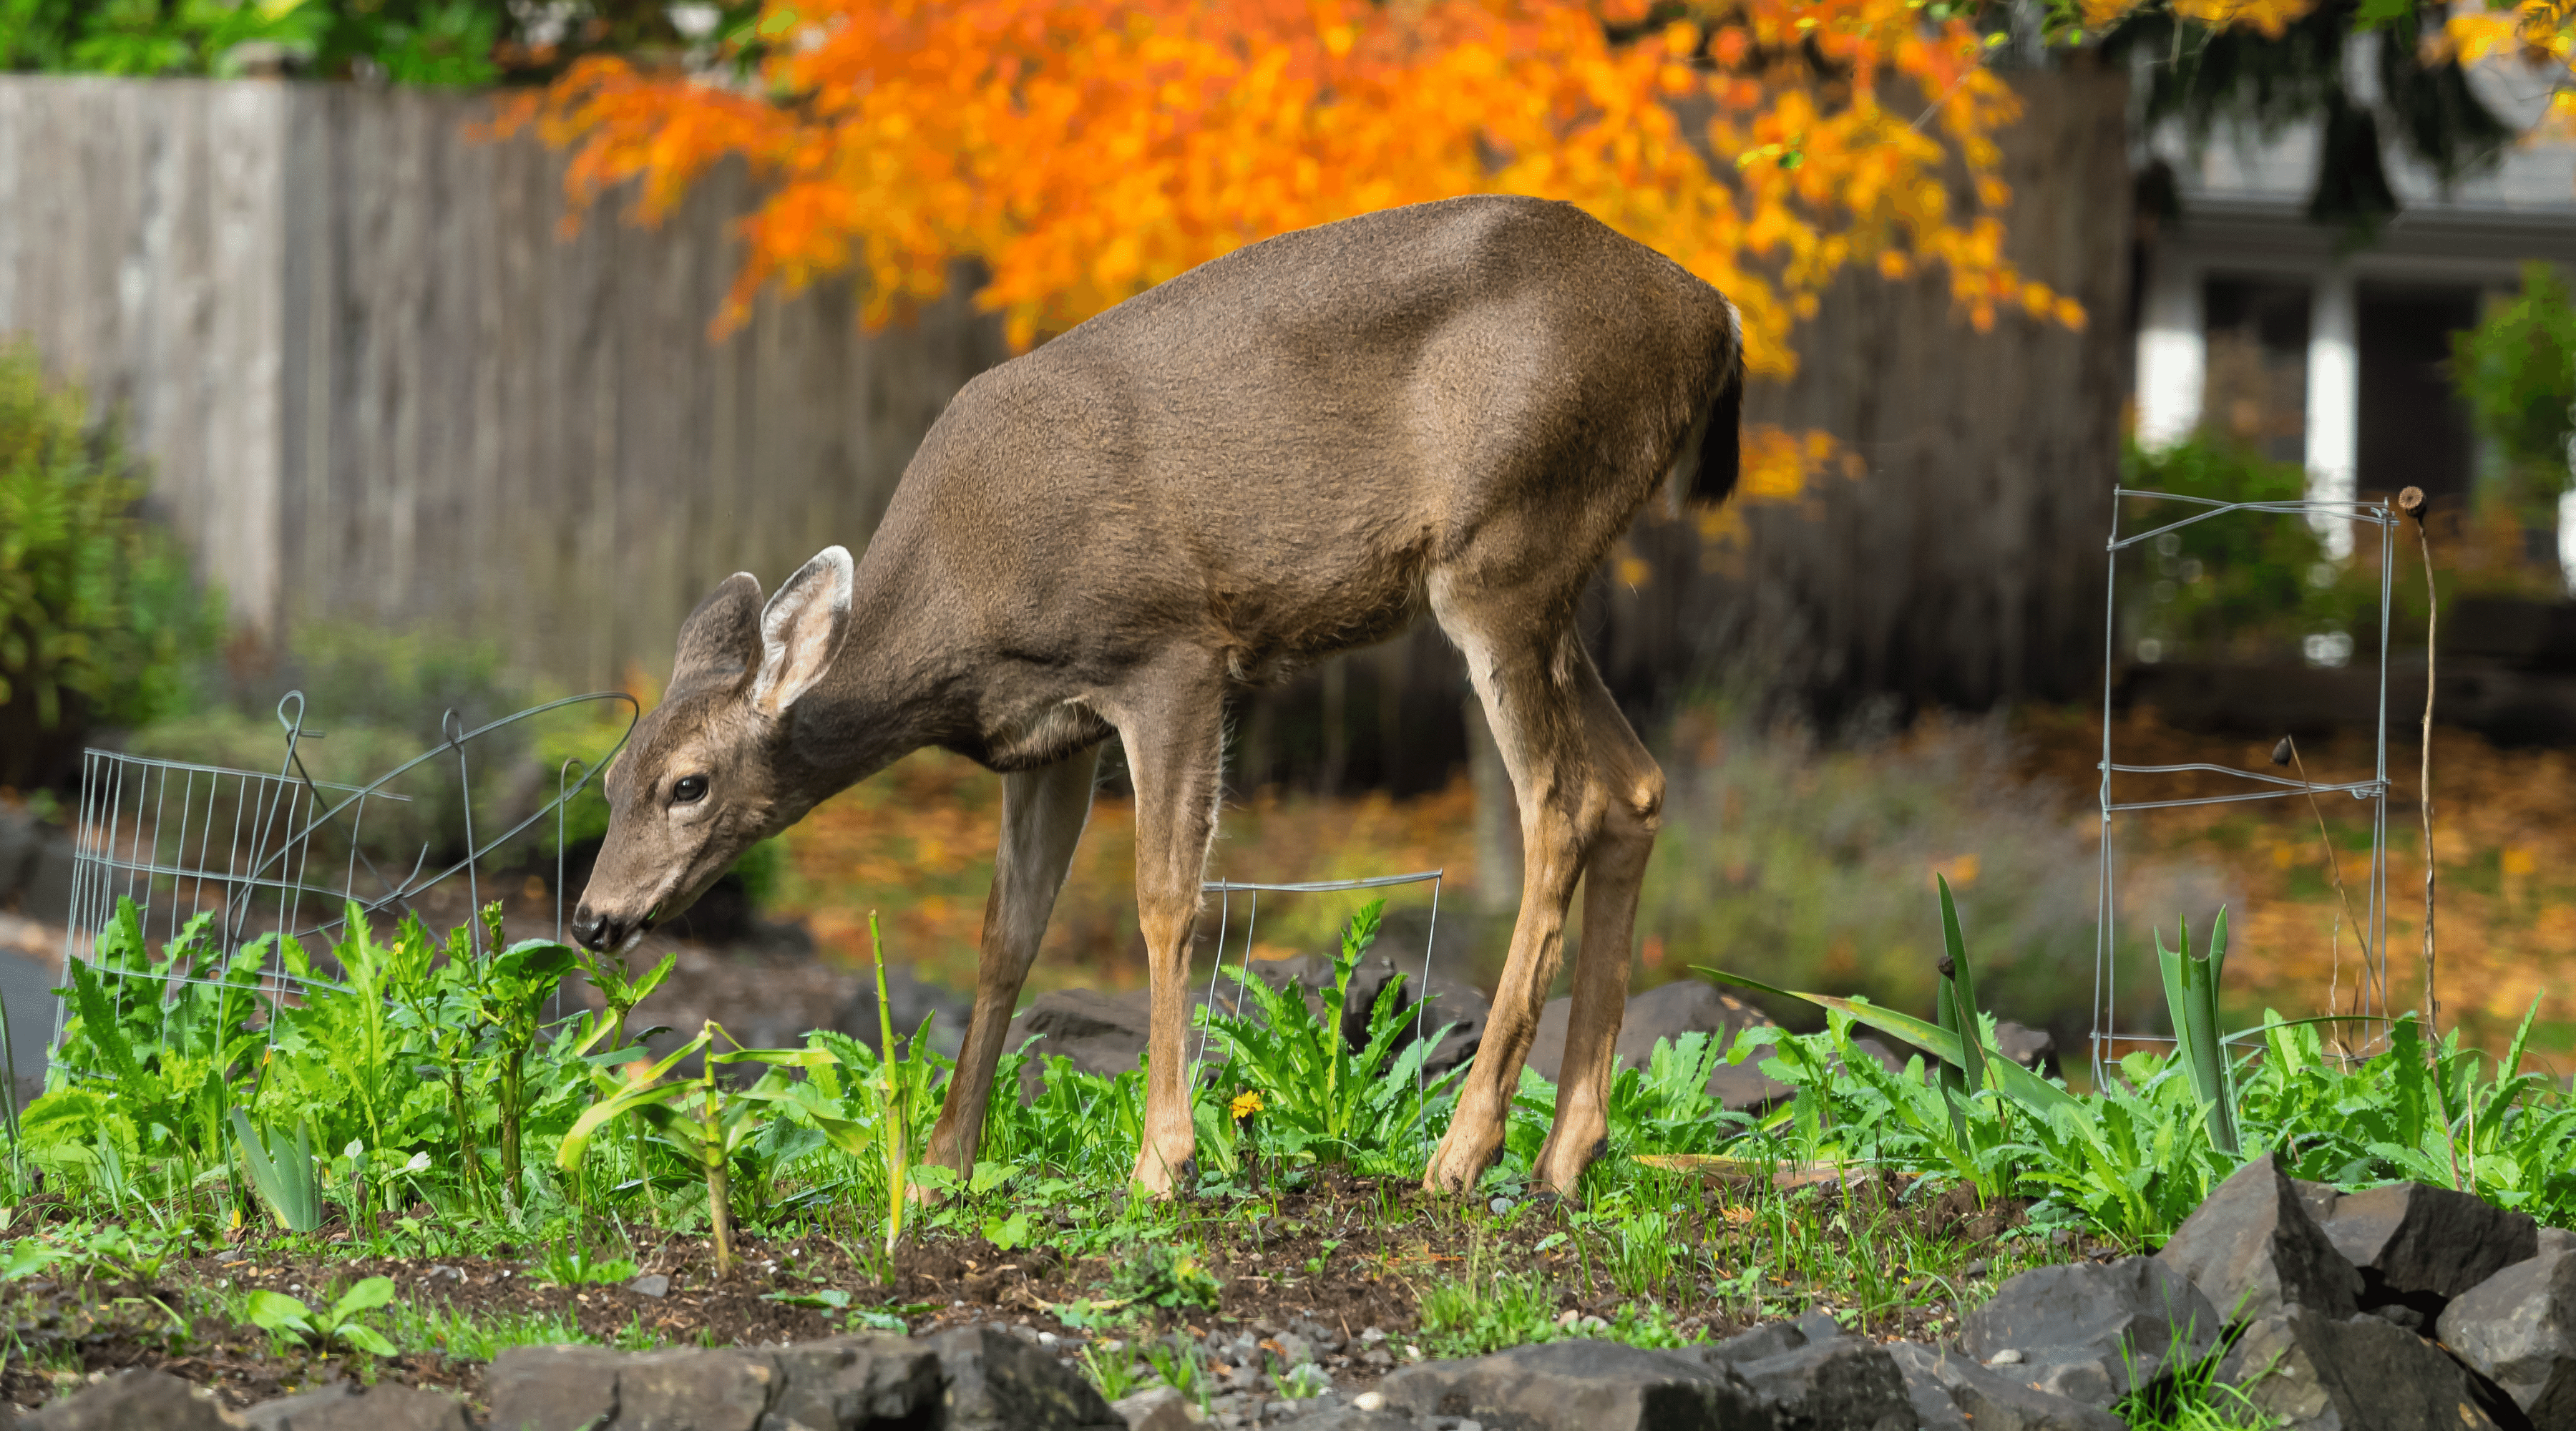 Image of a deer in a garden